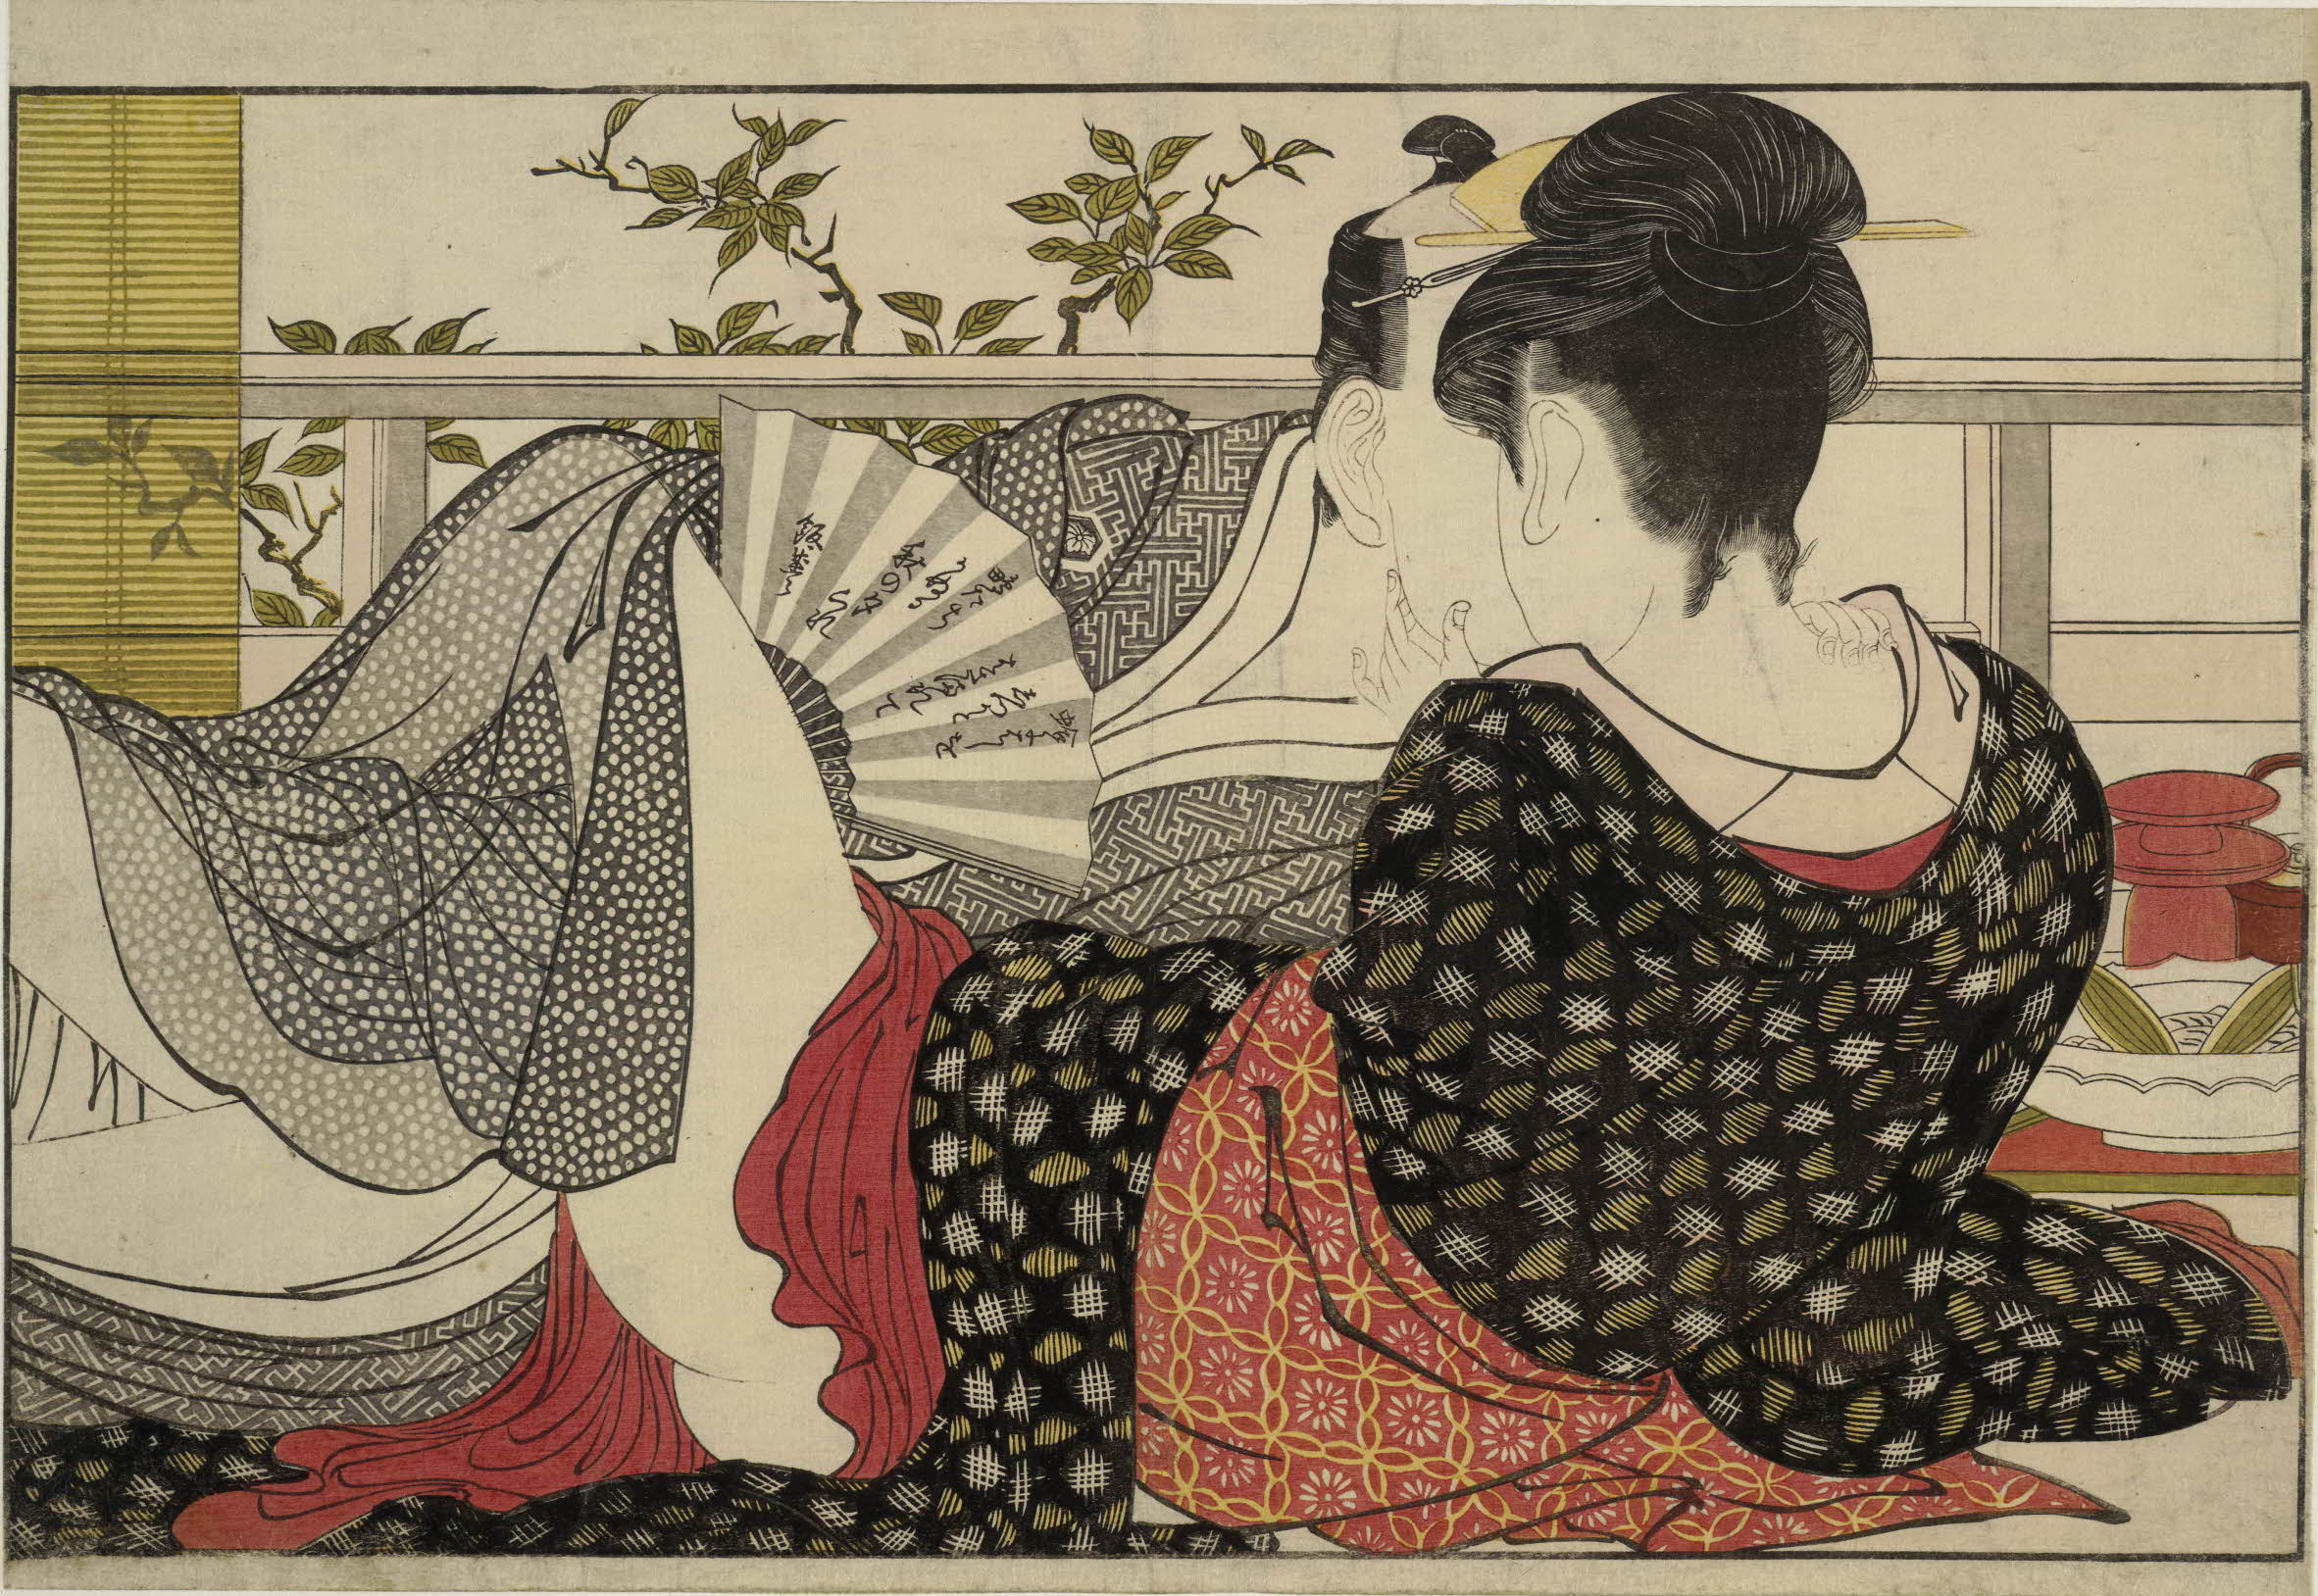 Utamakura (Poema da Almofada) by Kitagawa Utamaro - 1788 - 254 x 369 mm British Museum